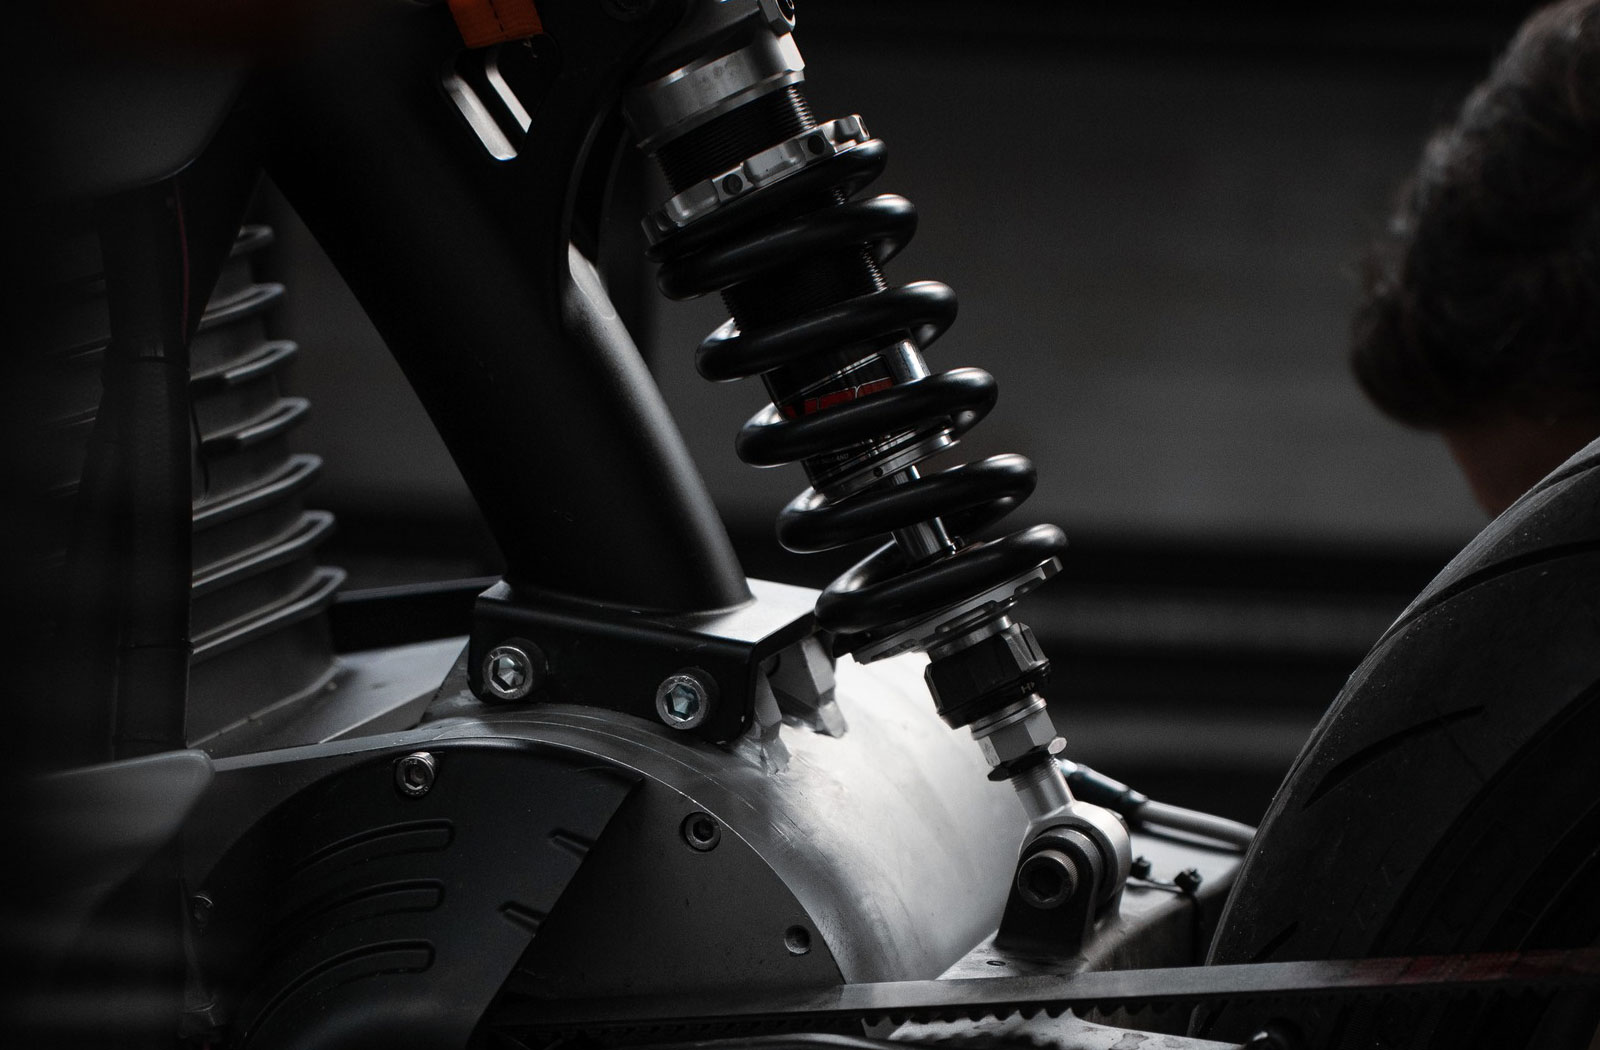 Savic motorcycles frame and monoshock detail